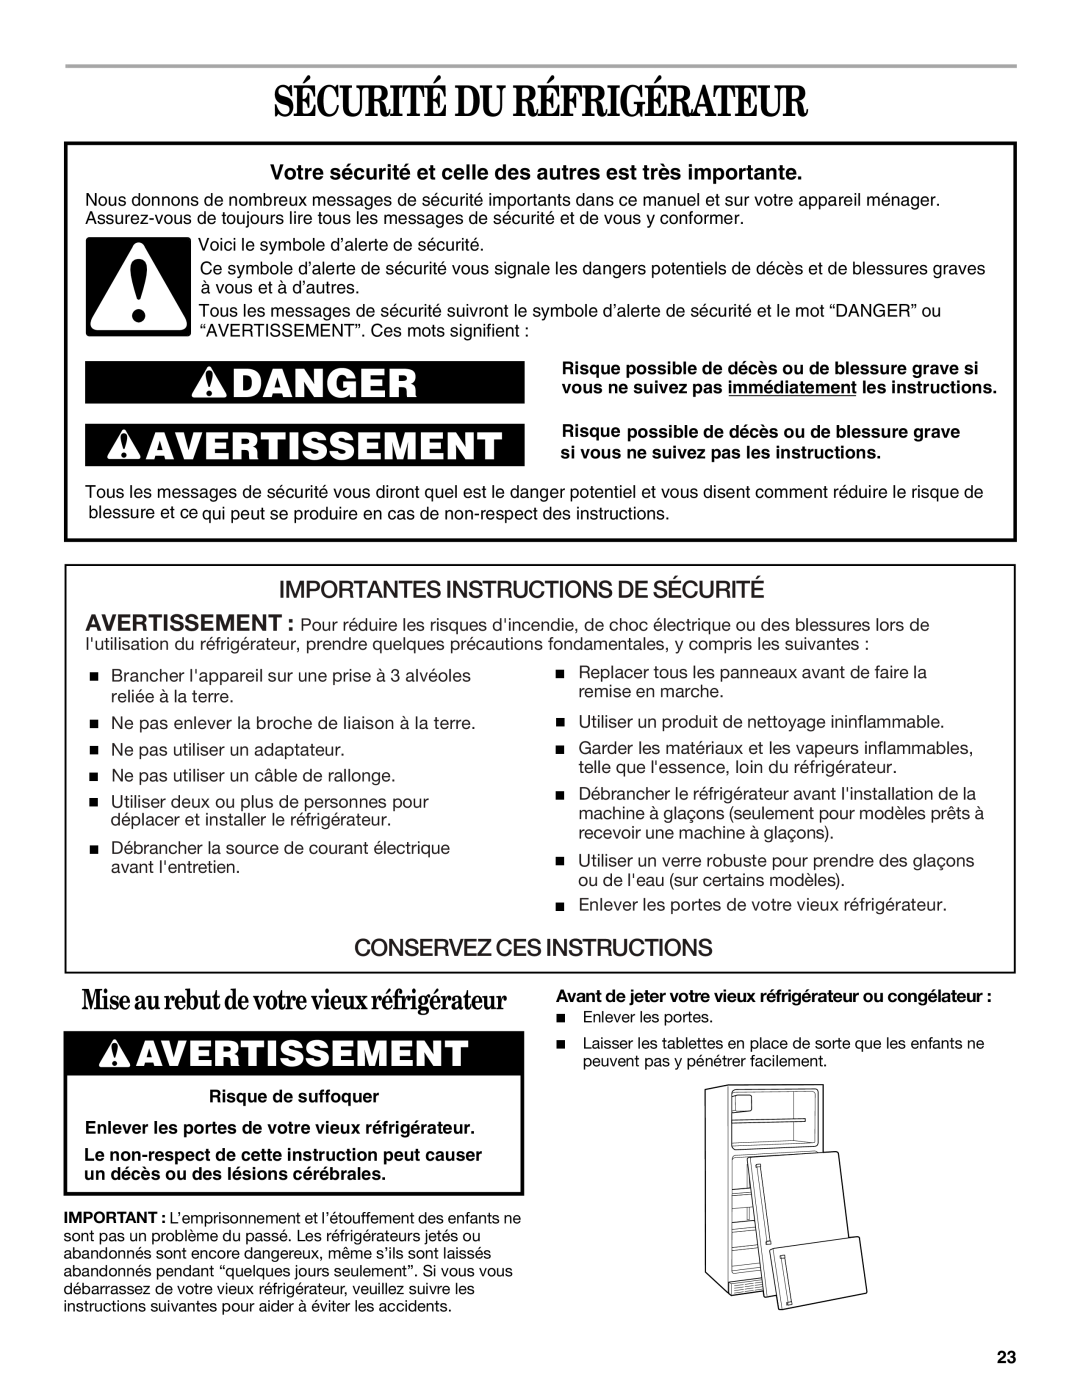 Whirlpool 2212539 manual Sécurité Du Réfrigérateur, Avertissement, Mise au rebut de votre vieux réfrigérateur, Danger 